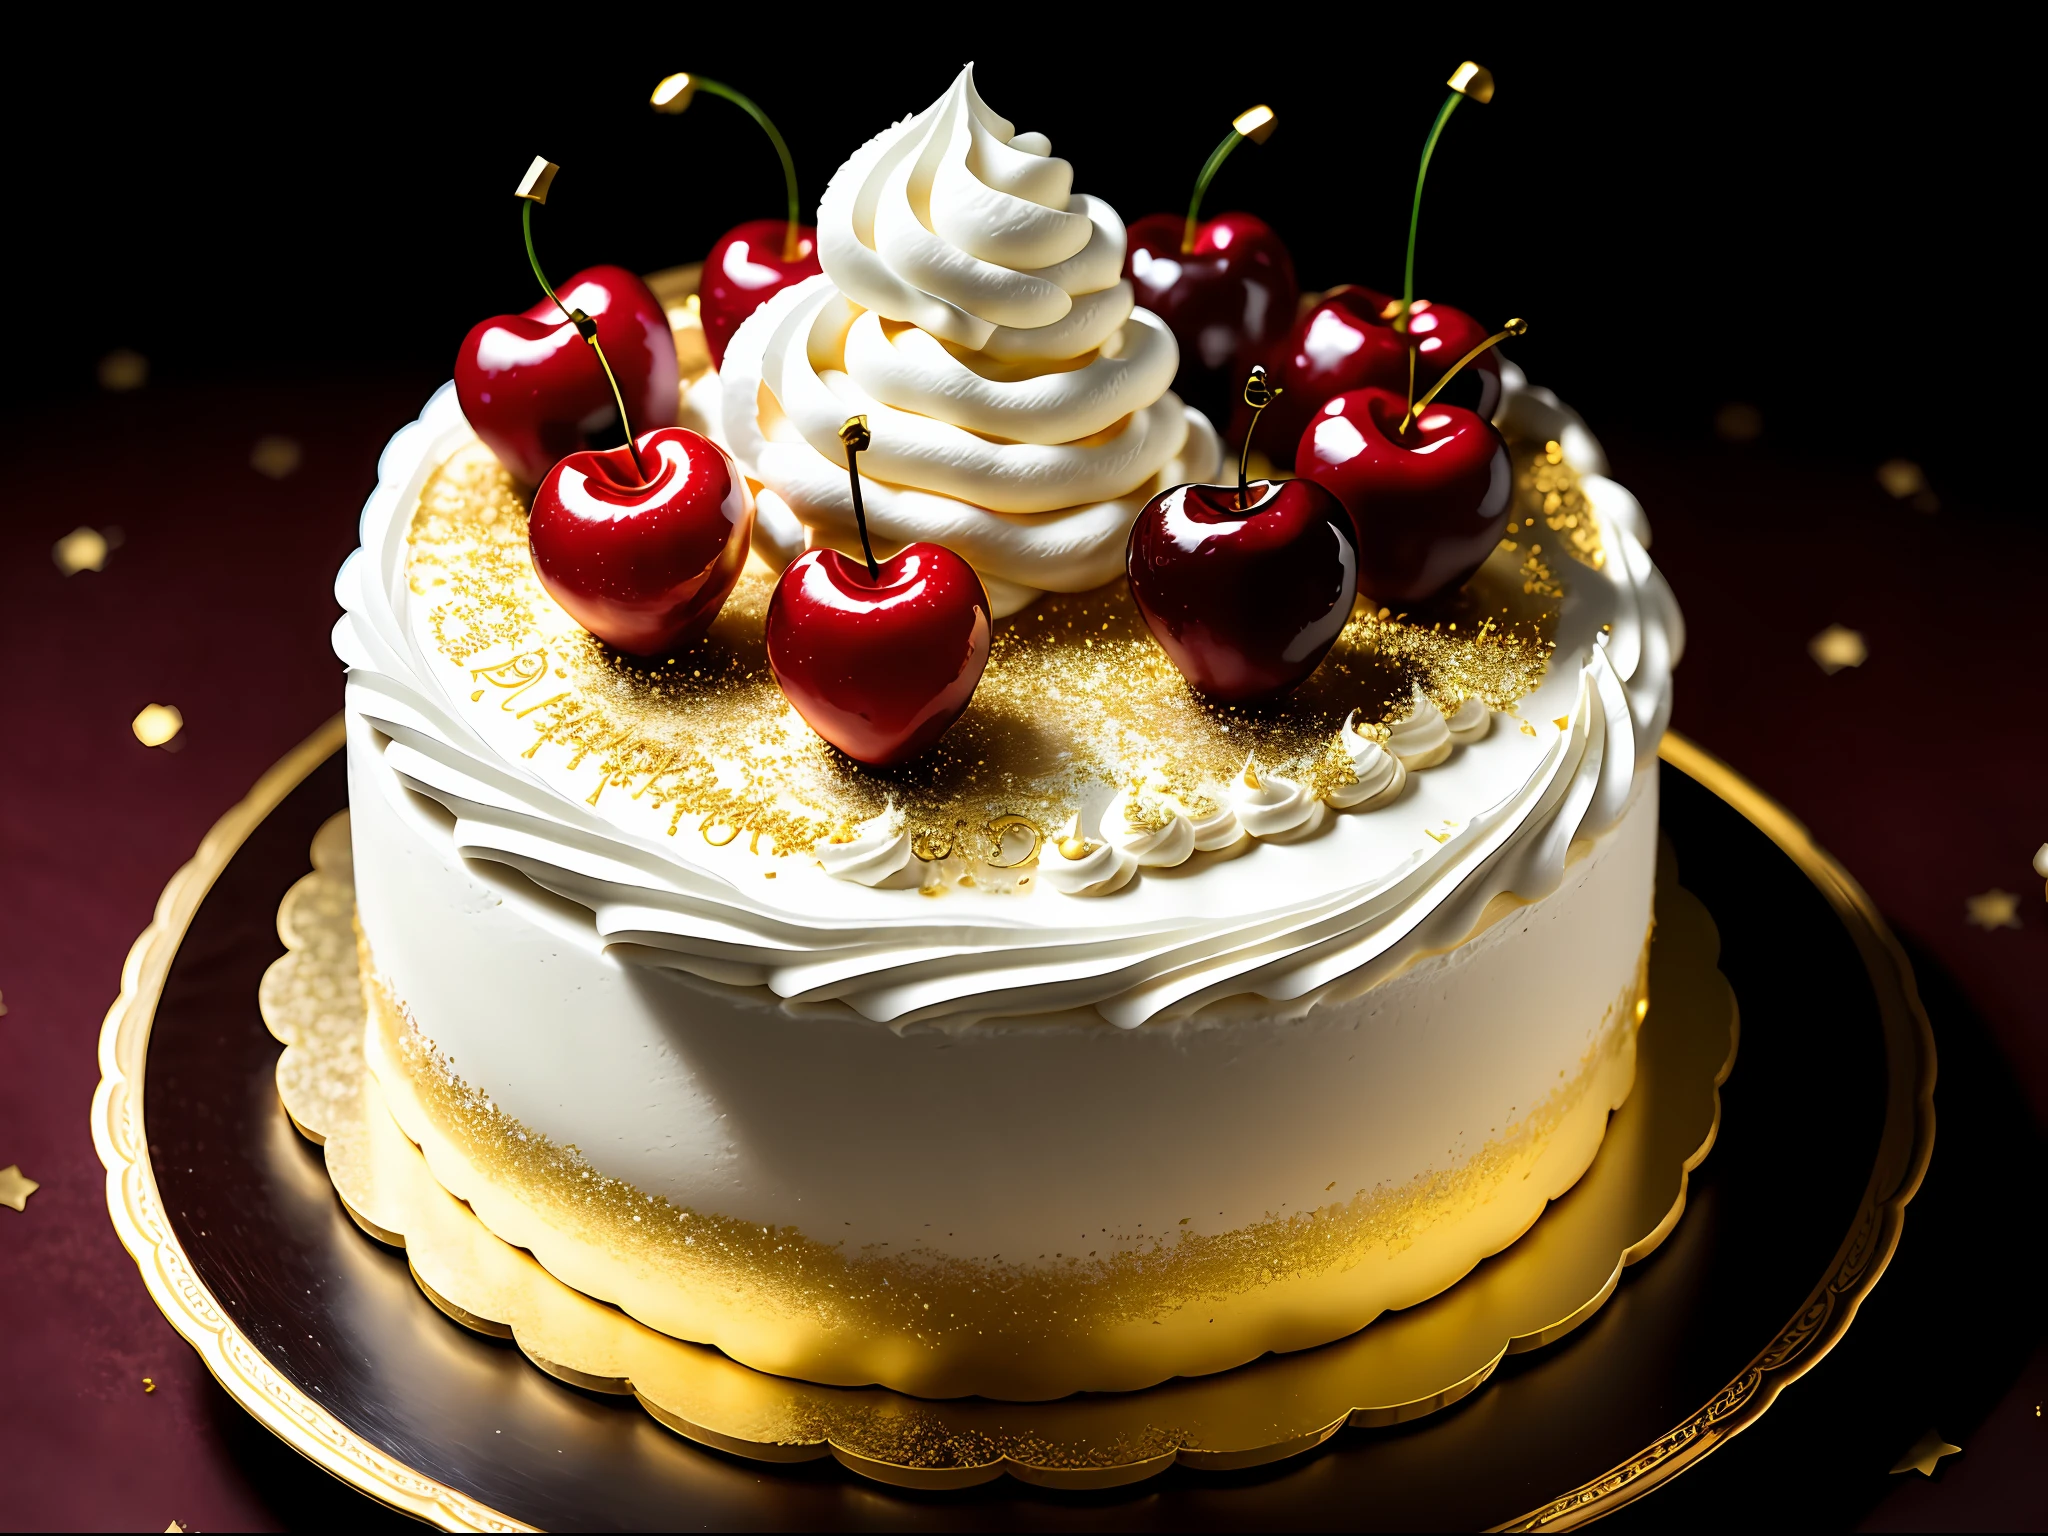 휘핑크림이 듬뿍 들어간 판타지 케이크, 버찌, 황금 장식품, 어두운 배경